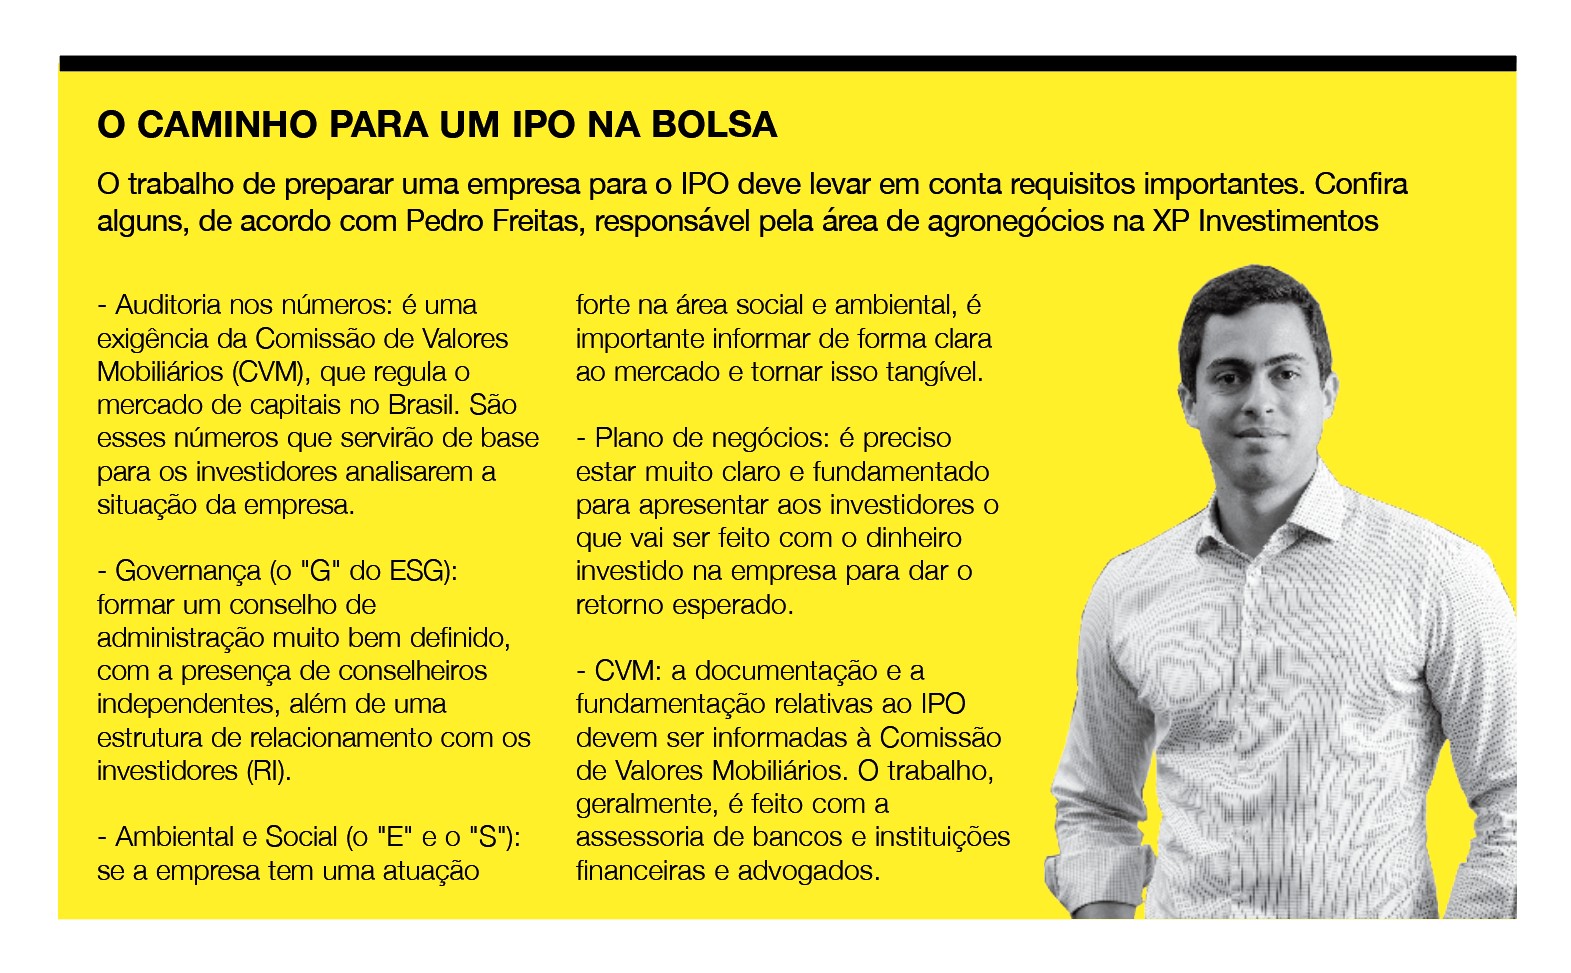 Responsável pela área de agronegócios no Investment Banking da XP, Pedro Freitas. (Foto: Reprodução)